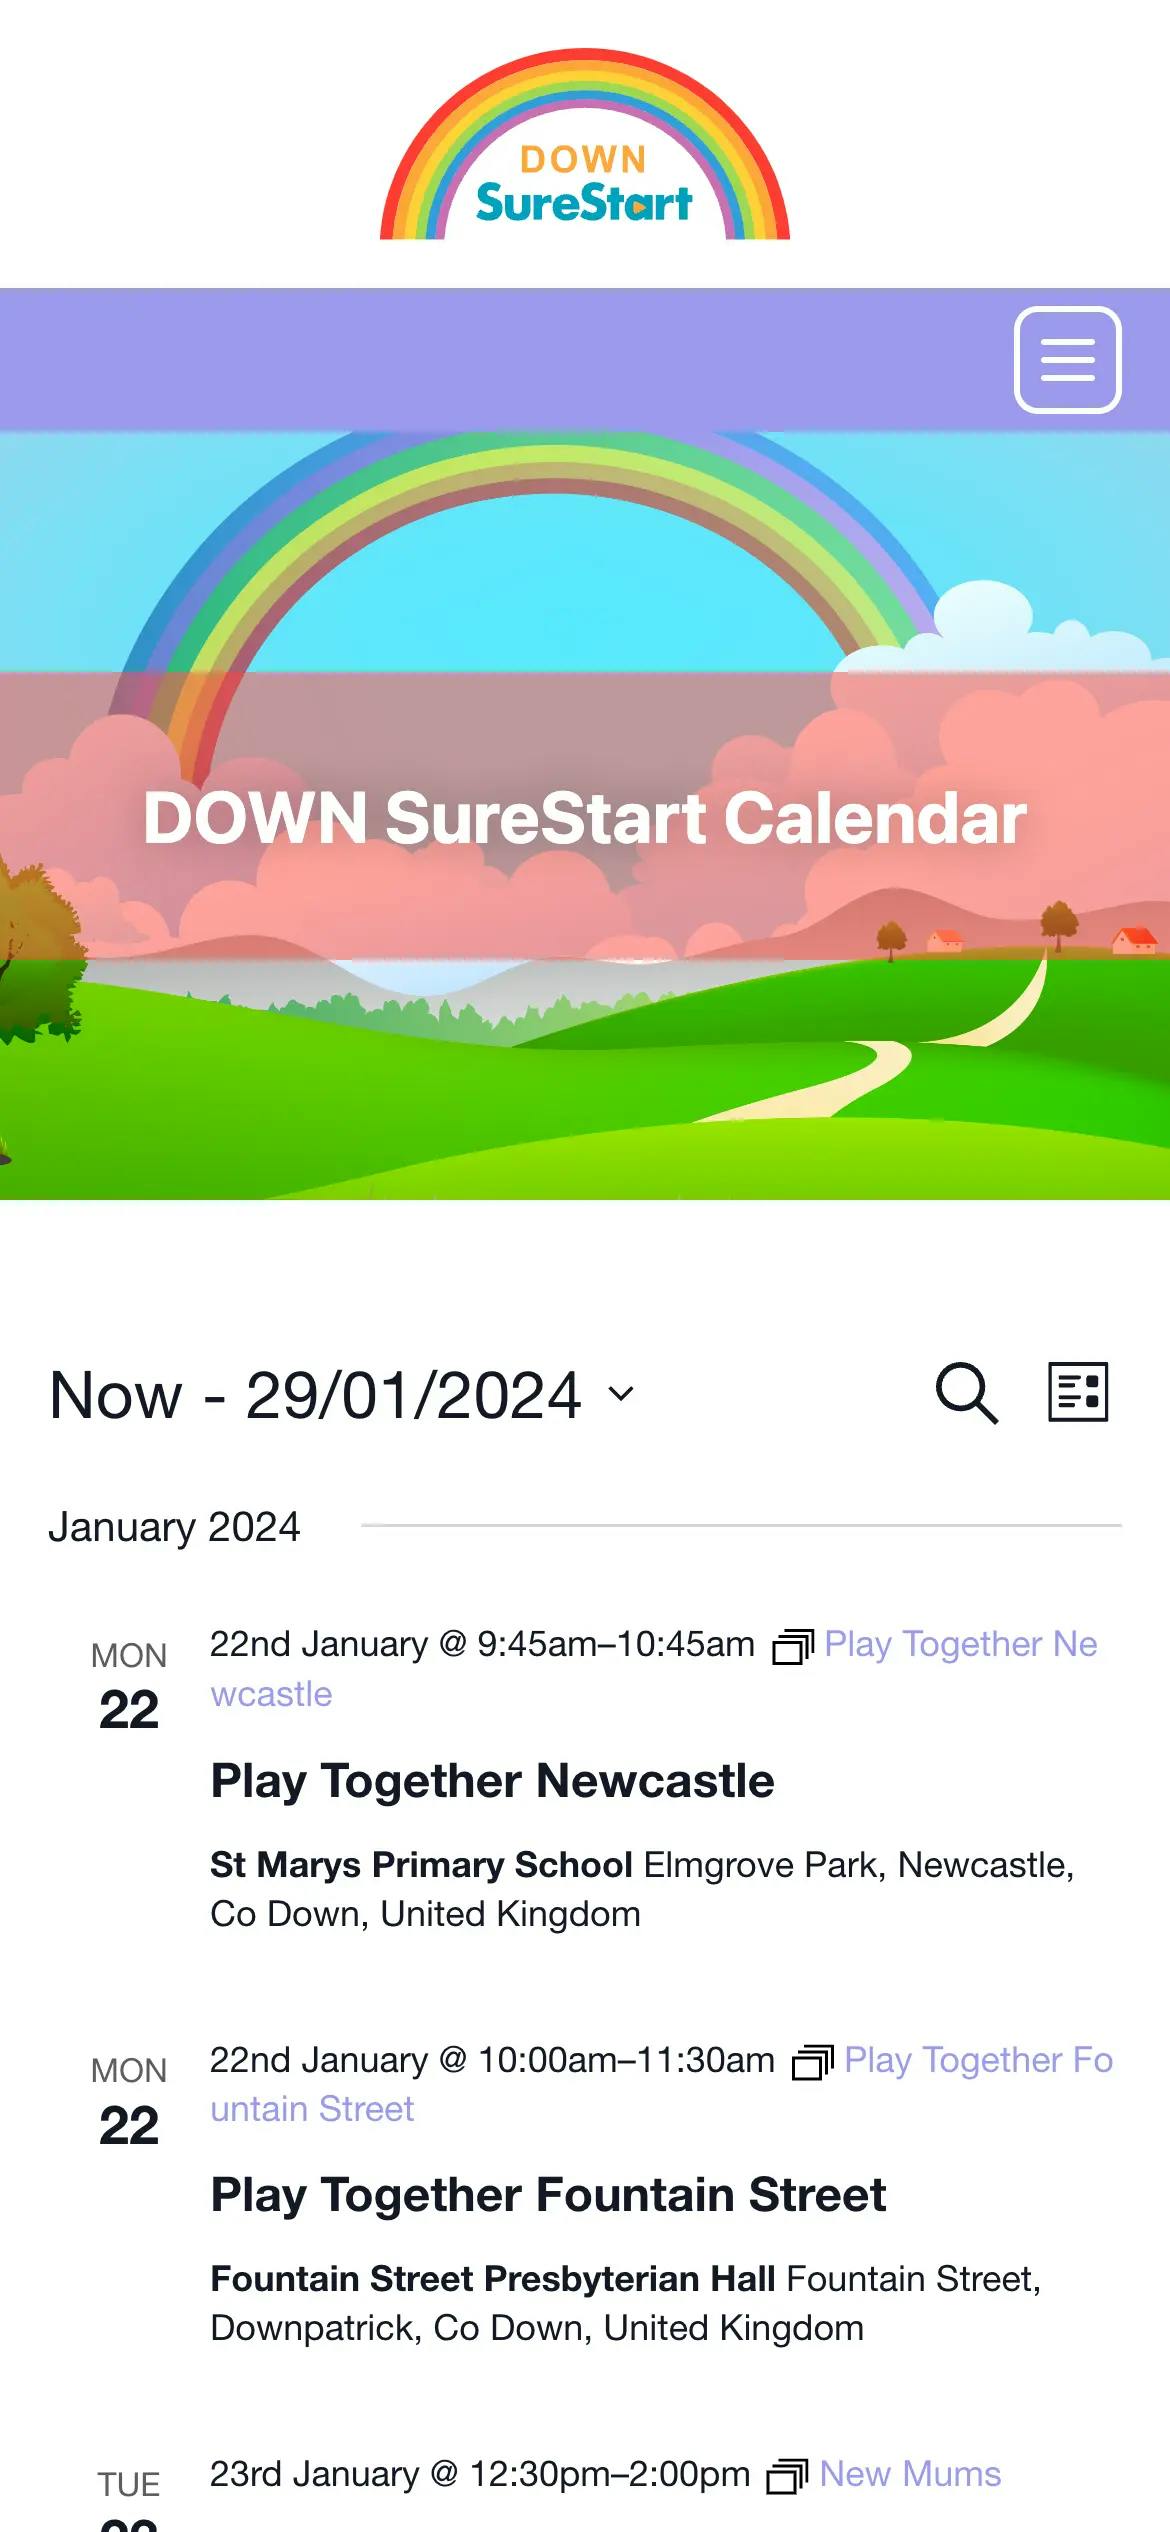 DOWN SureStart calendar page web design on mobile